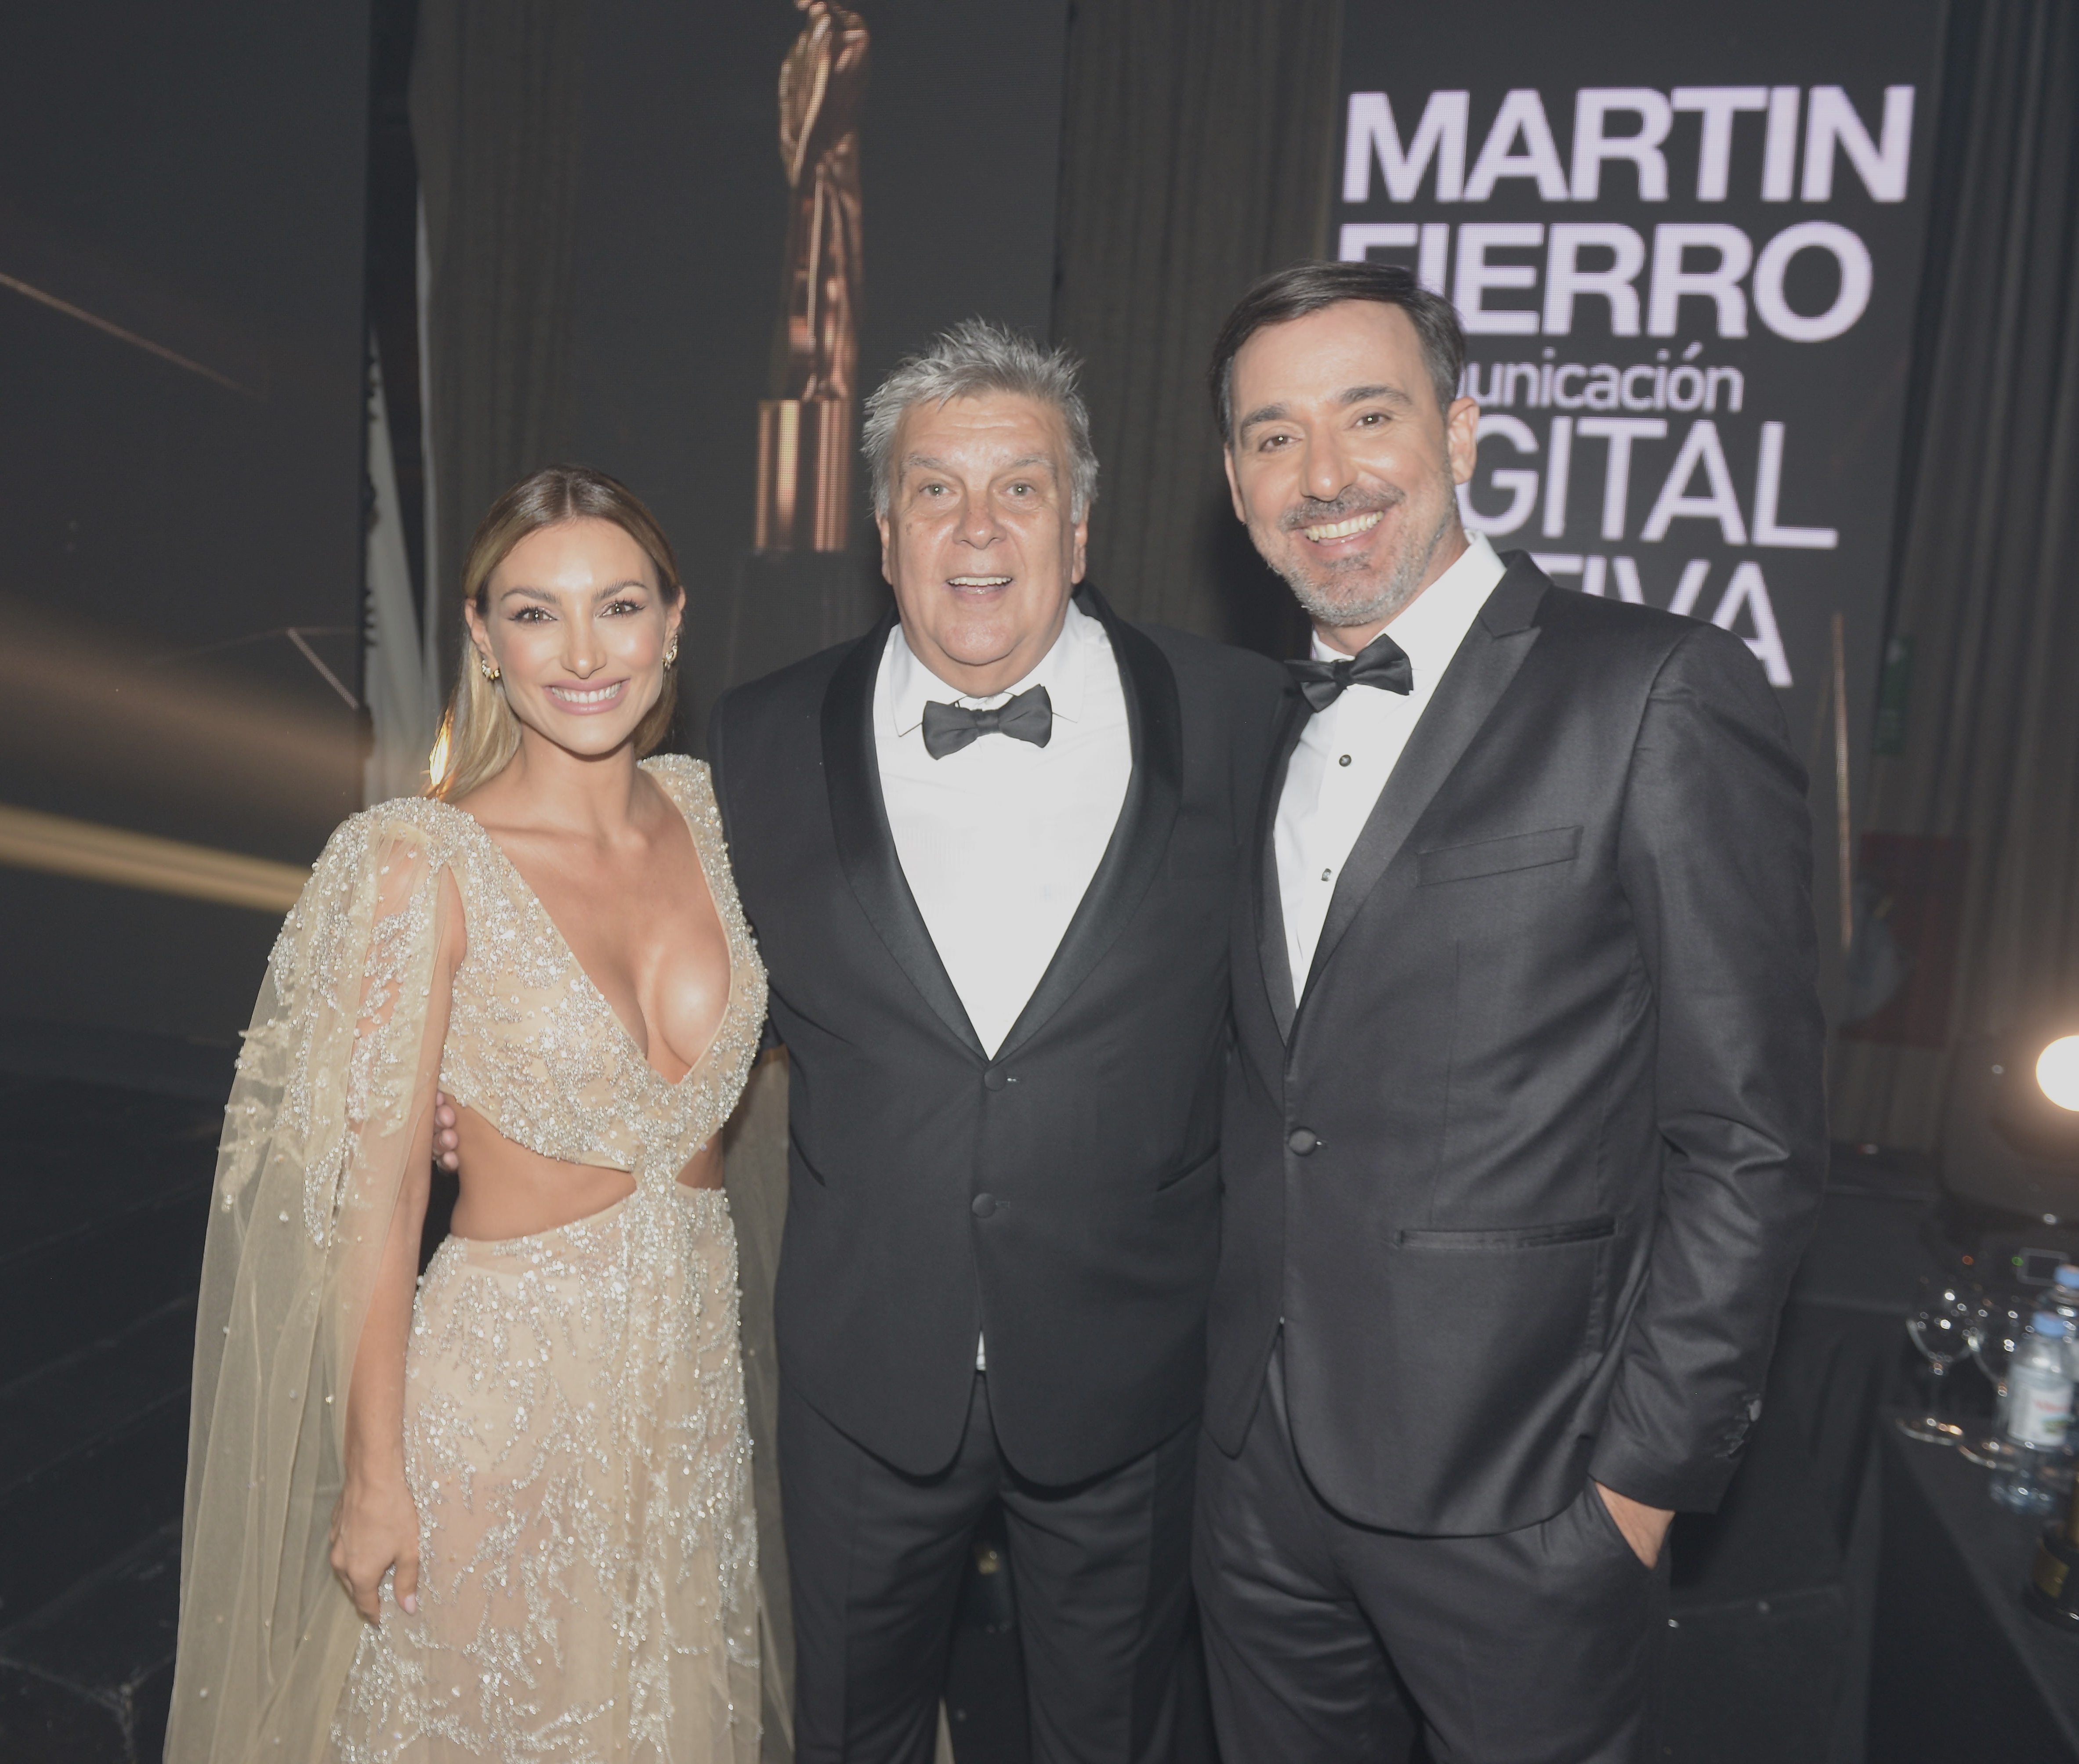 Sofía Macaggi y Pepe Vasco, presentadores de los Premios Martín Fierro Digital Nativo junto a Luis Ventura (Foto: Christian Heit)